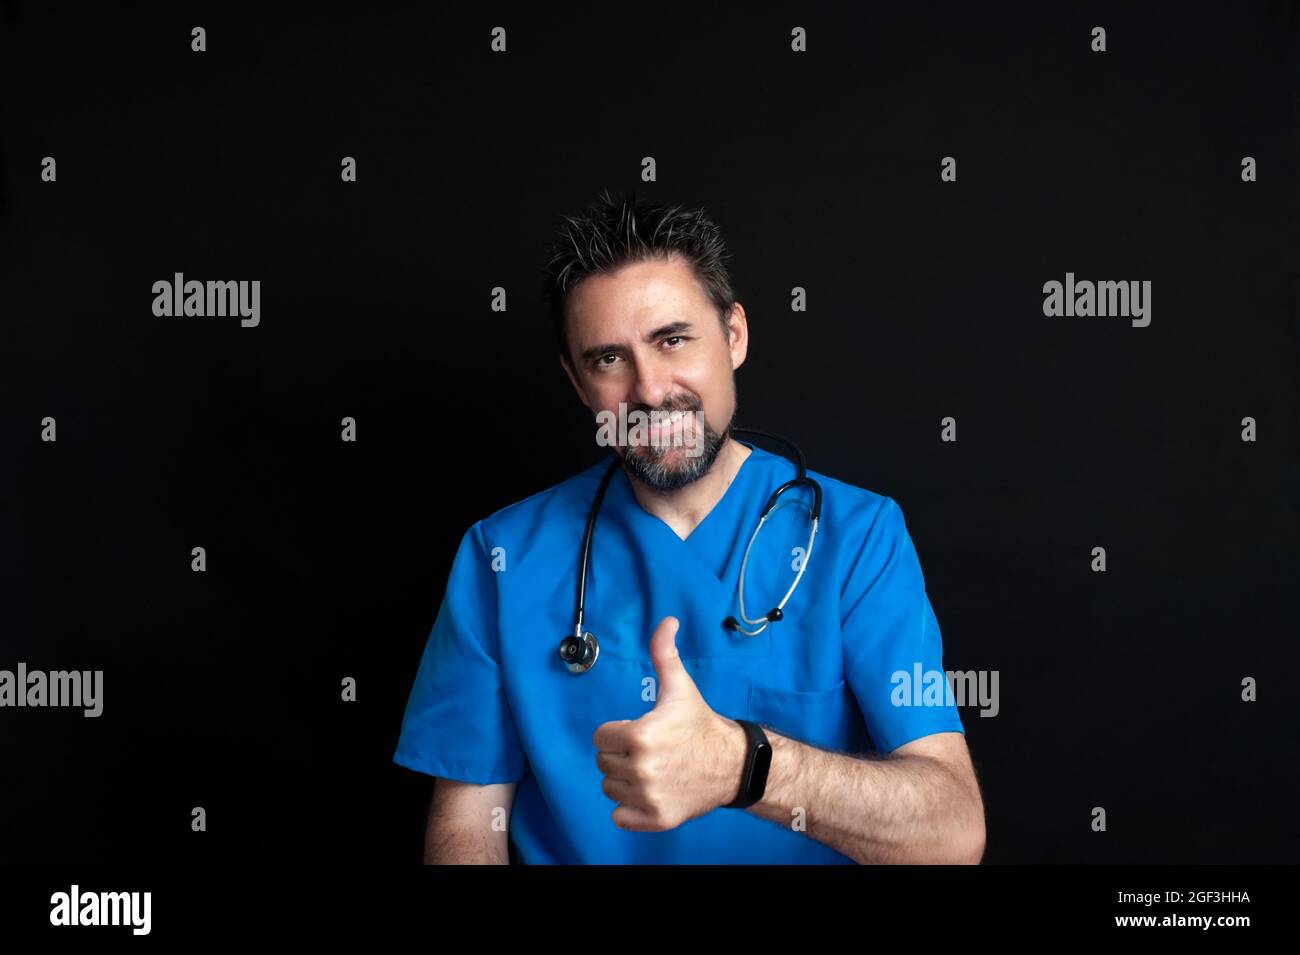 Un medico maschio vestito in una uniforme blu dell'ospedale, scuro e barbuto, portando uno stetoscopio intorno al collo, sorridendo e dando un pollice su indicando t Foto Stock